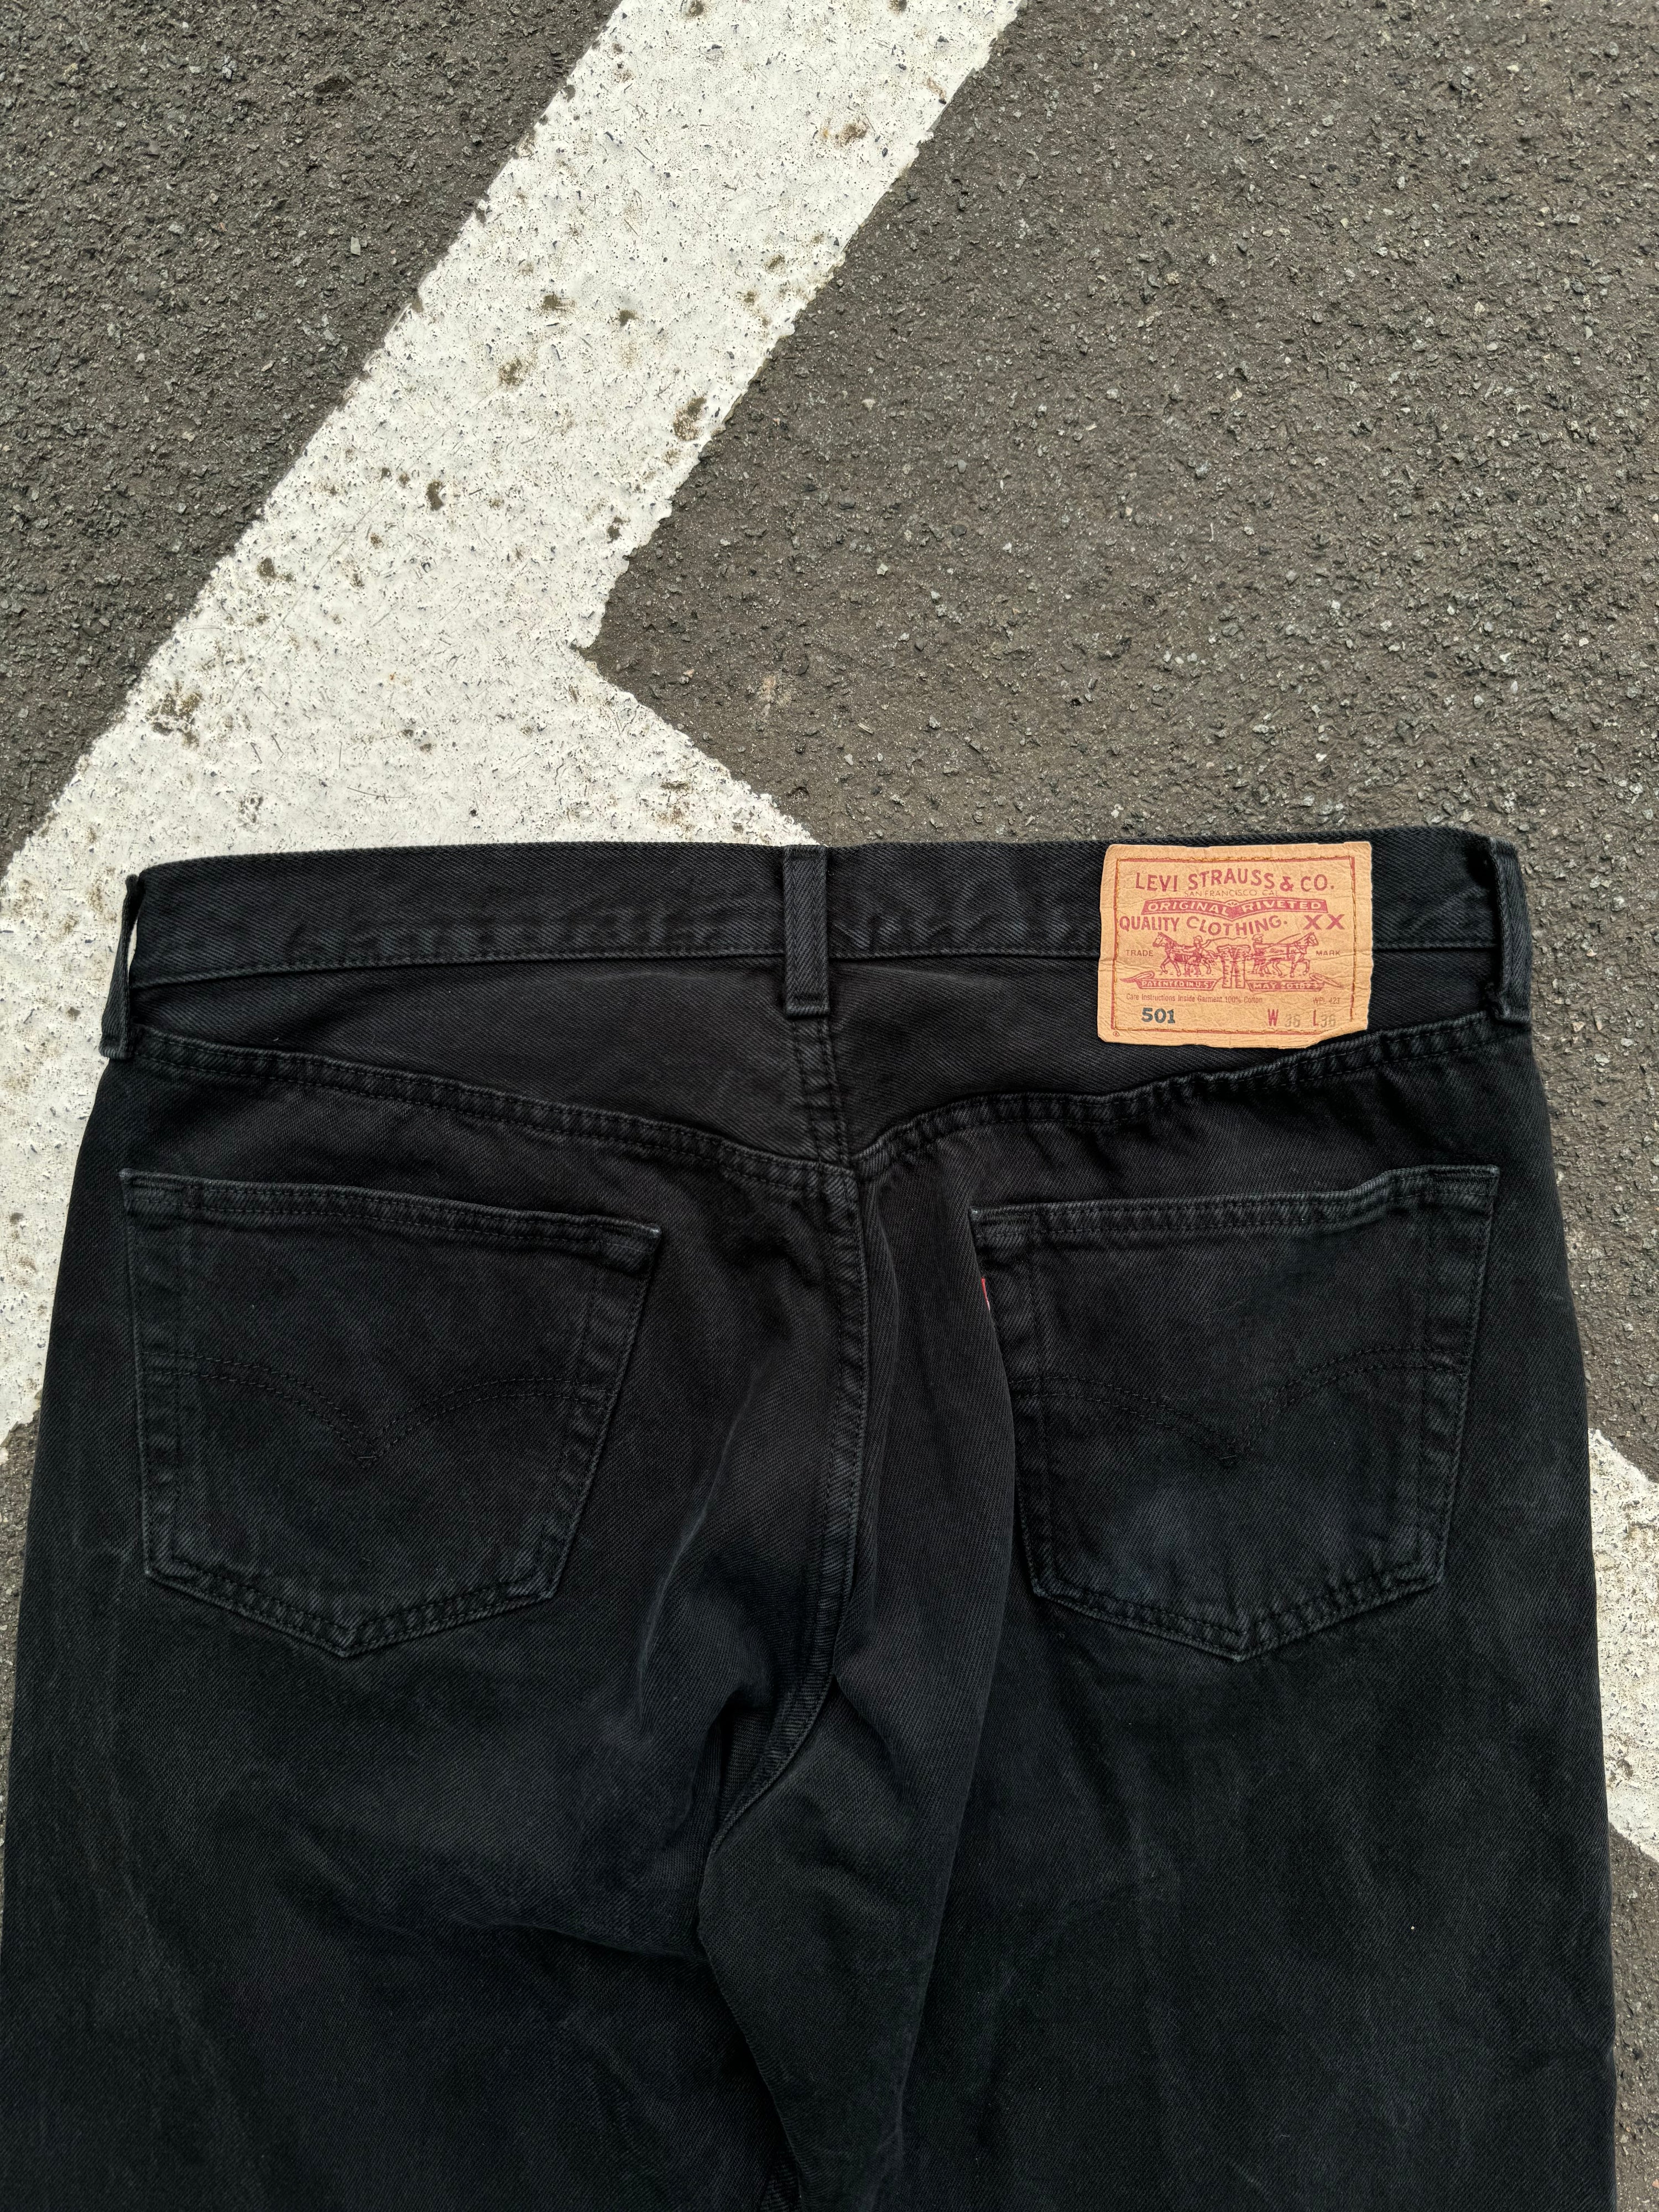 Vintage 90s Levi’s 501 Straight Cut Denim Jeans Hose (W34)